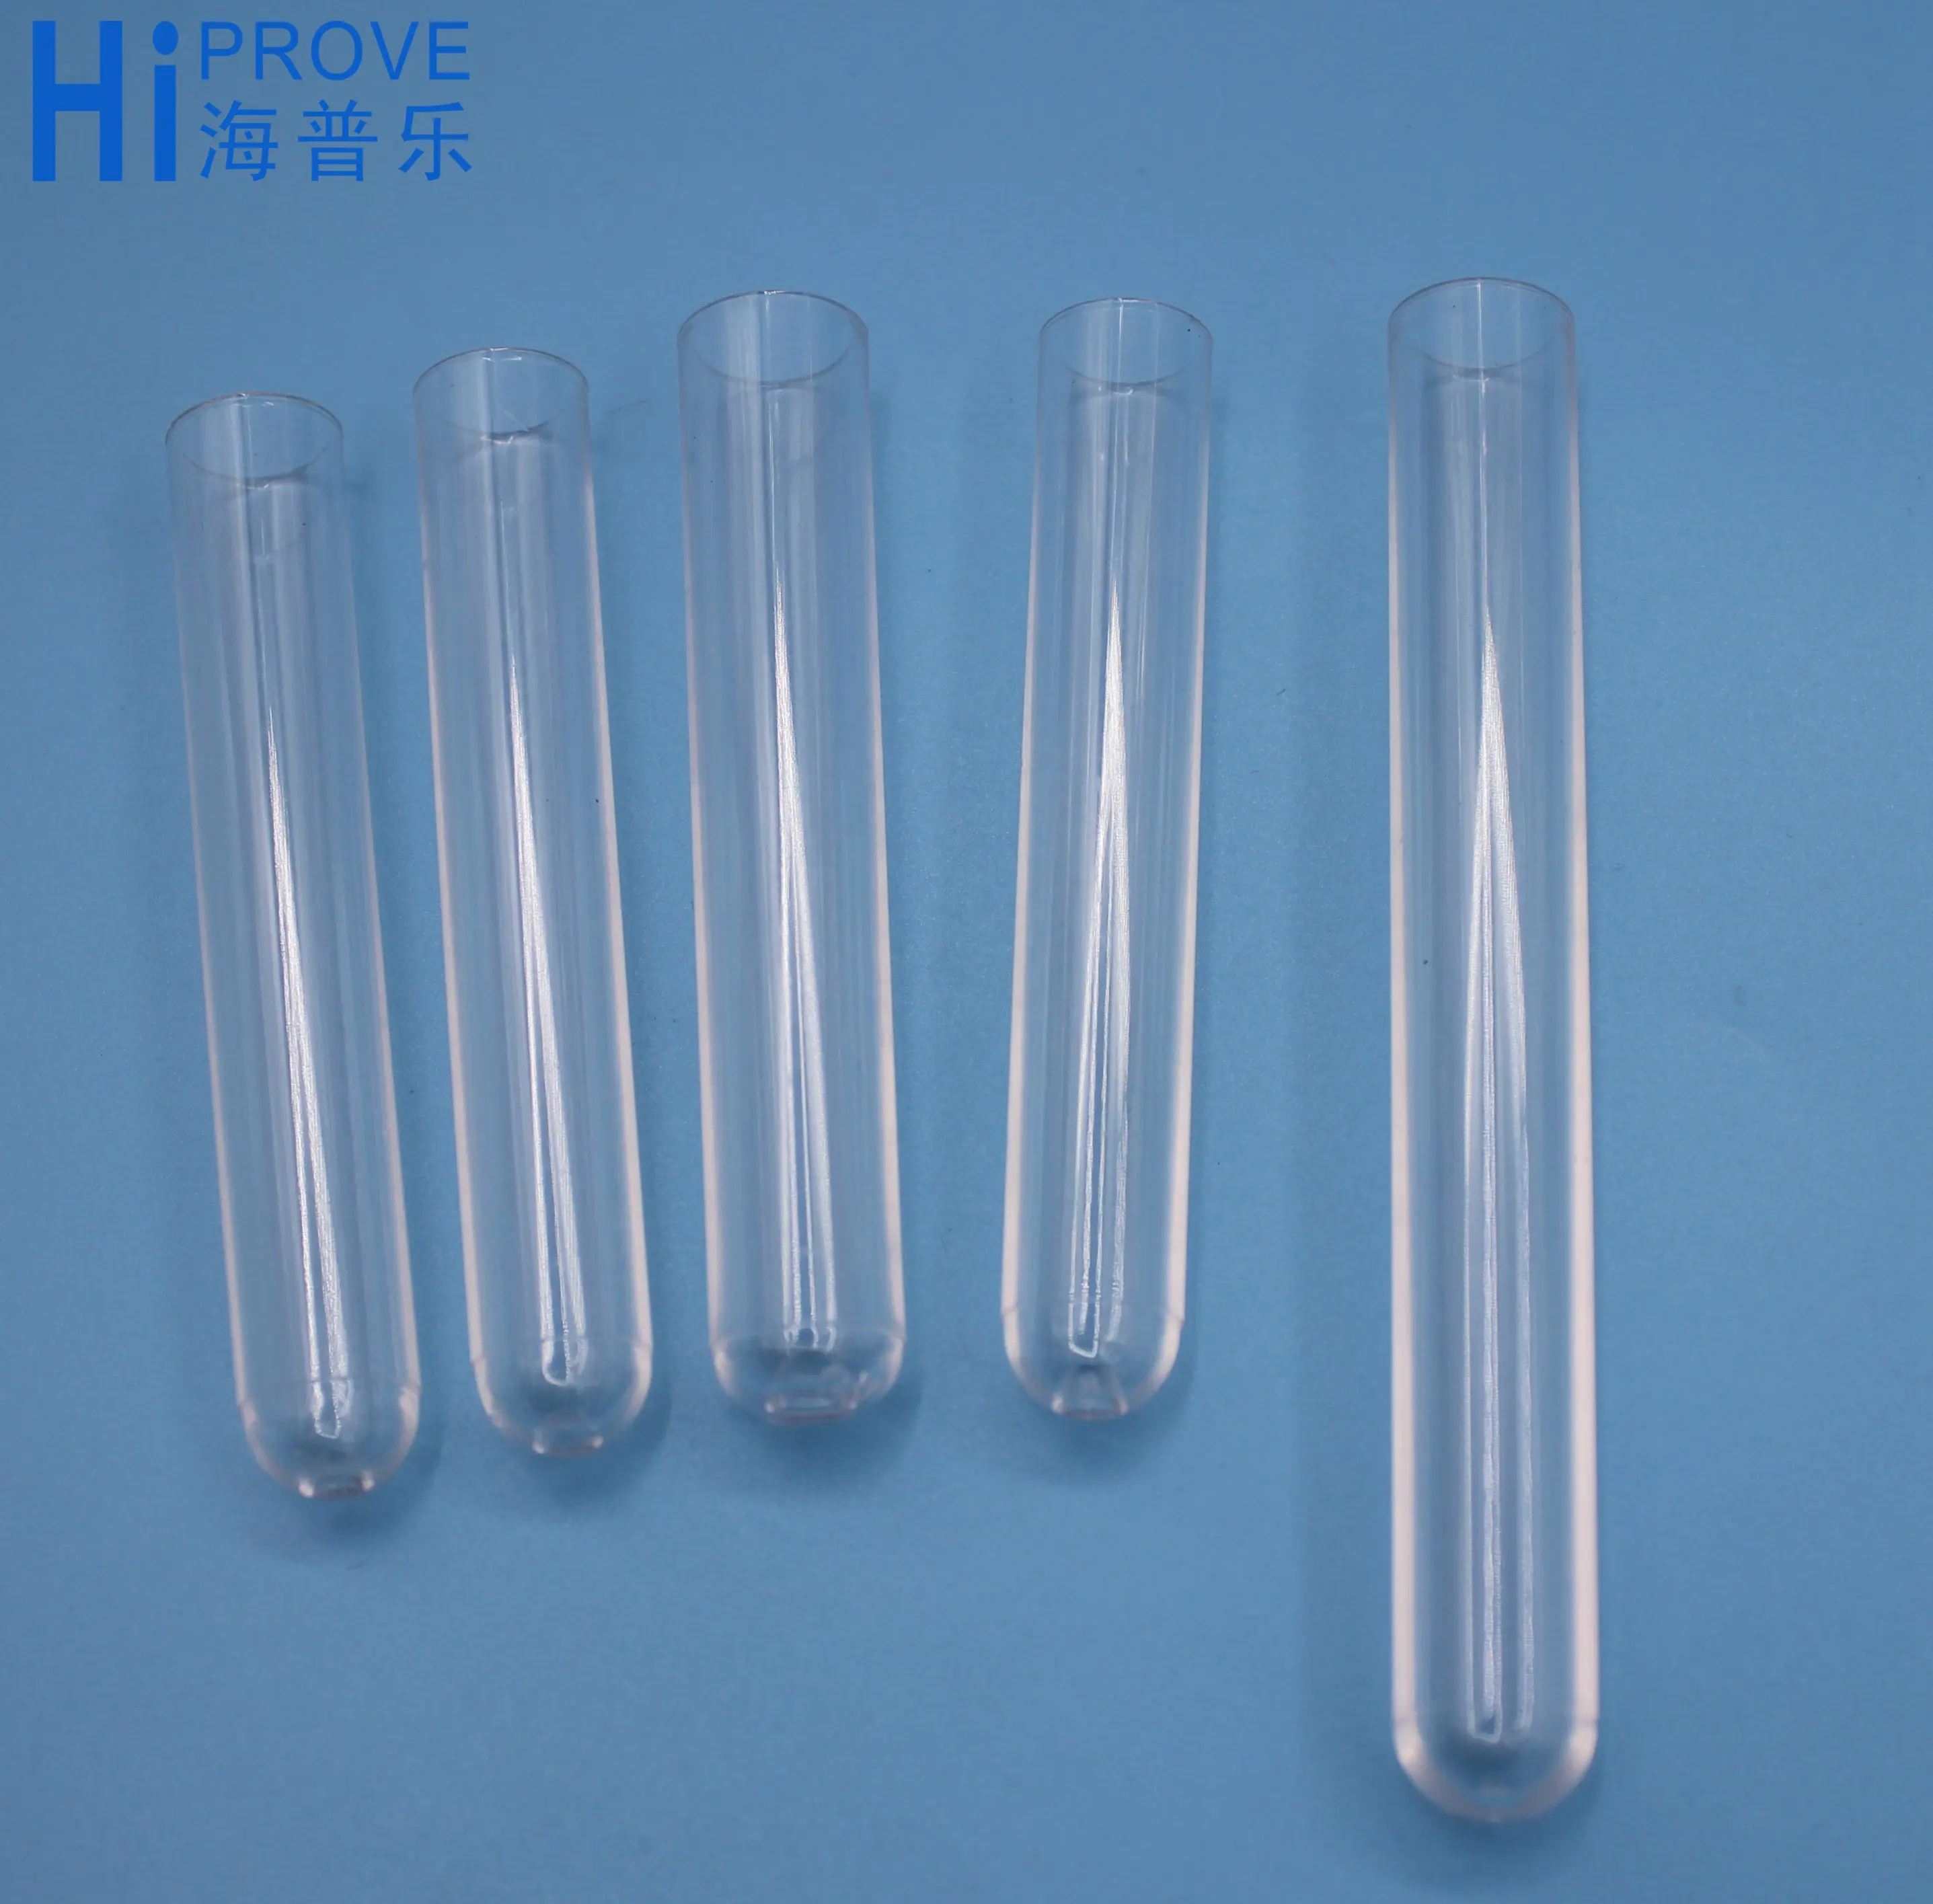 Tubo de ensayo de vidrio y plástico para laboratorio, tubo de ensayo de 13x75mm, barato